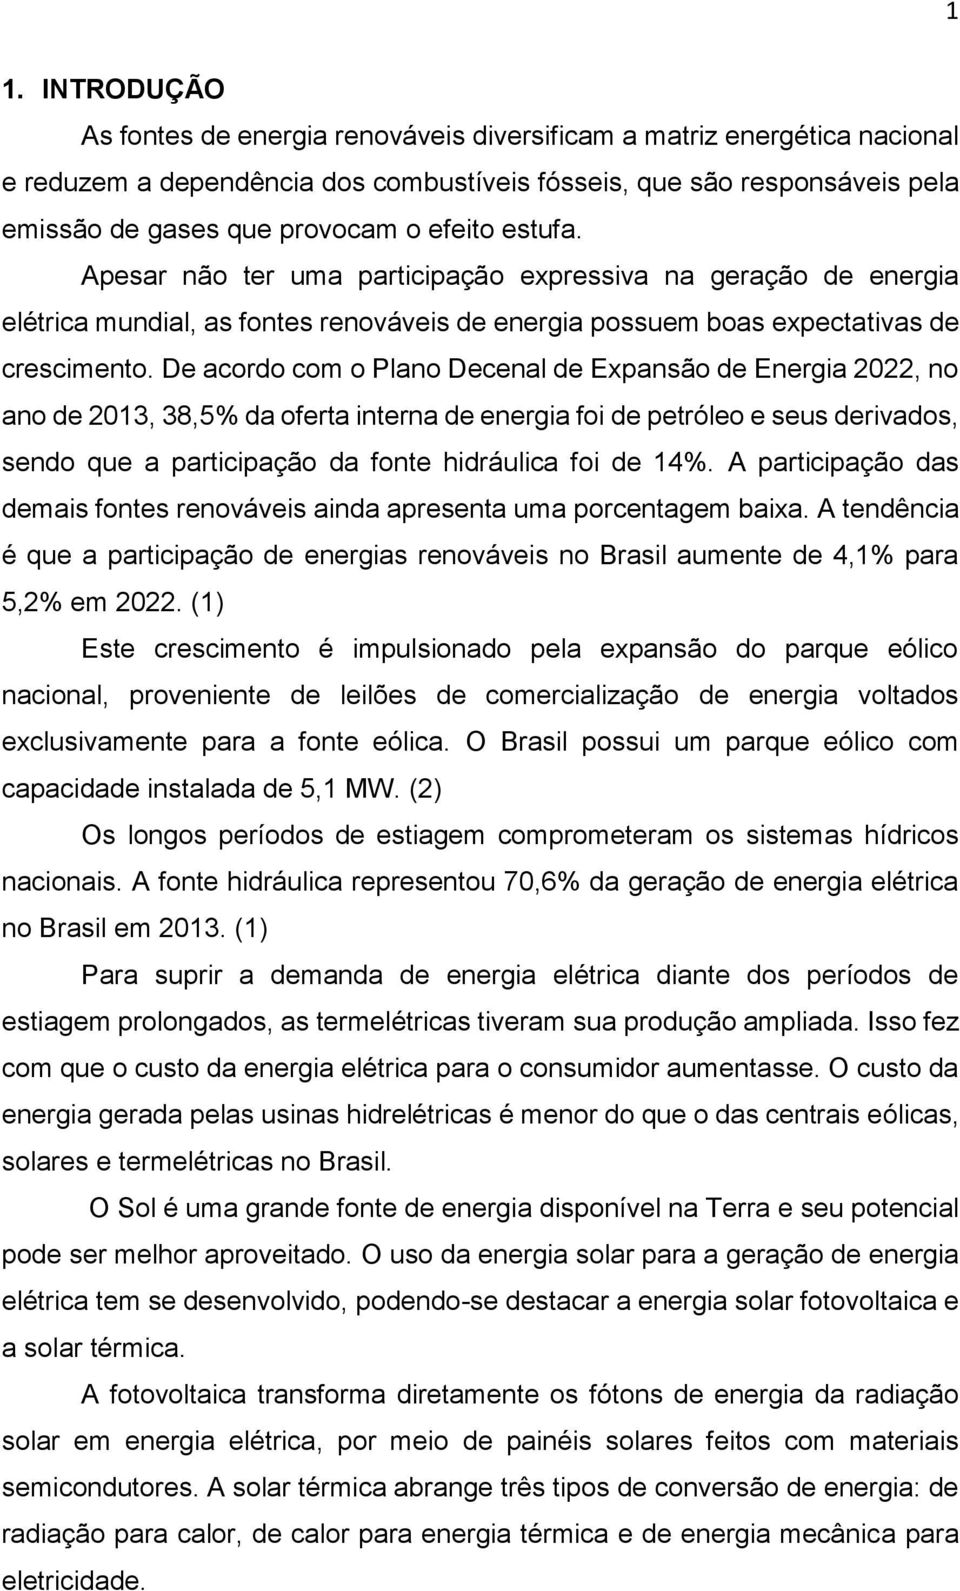 De acordo com o Plano Decenal de Expansão de Energia 2022, no ano de 2013, 38,5% da oferta interna de energia foi de petróleo e seus derivados, sendo que a participação da fonte hidráulica foi de 14%.